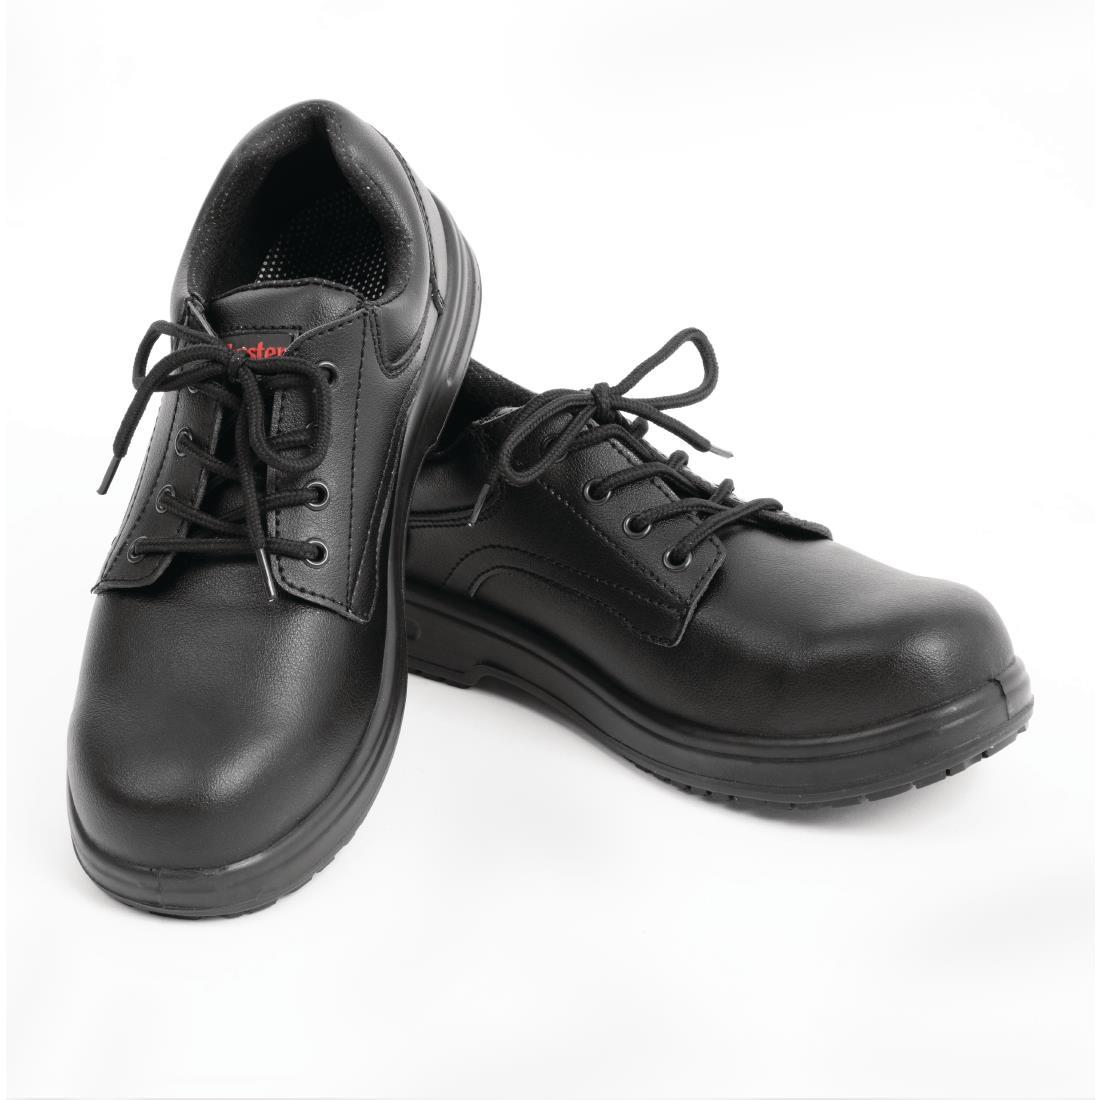 Slipbuster Basic Toe Cap Safety Shoes Black 38 - BB497-38  - 4